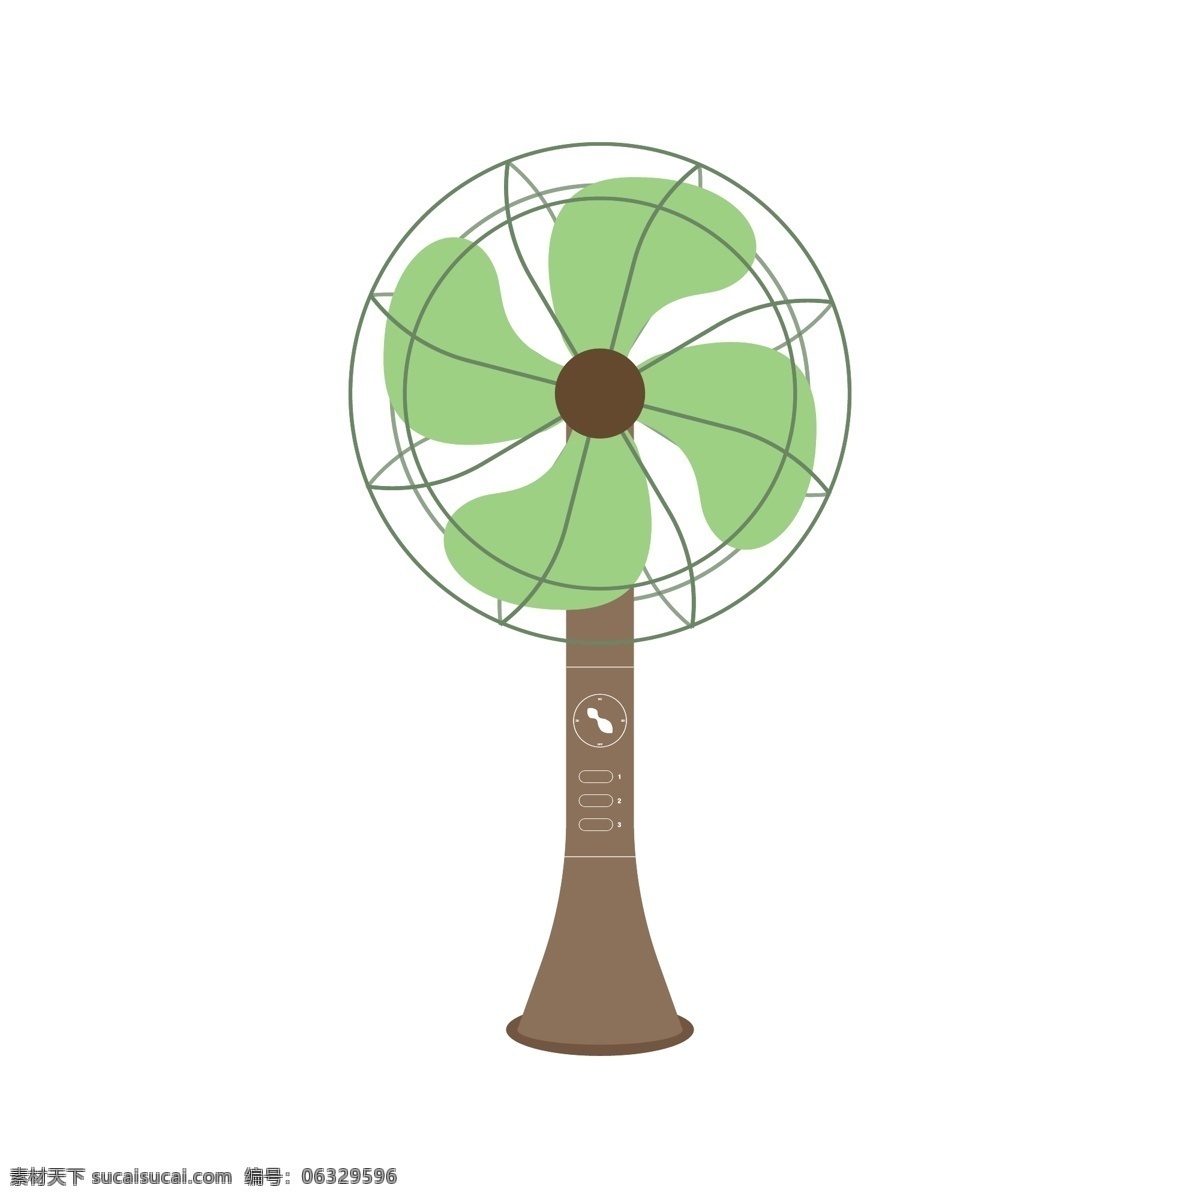 绿色 智能 电风扇 家用电器 四片叶子 避暑